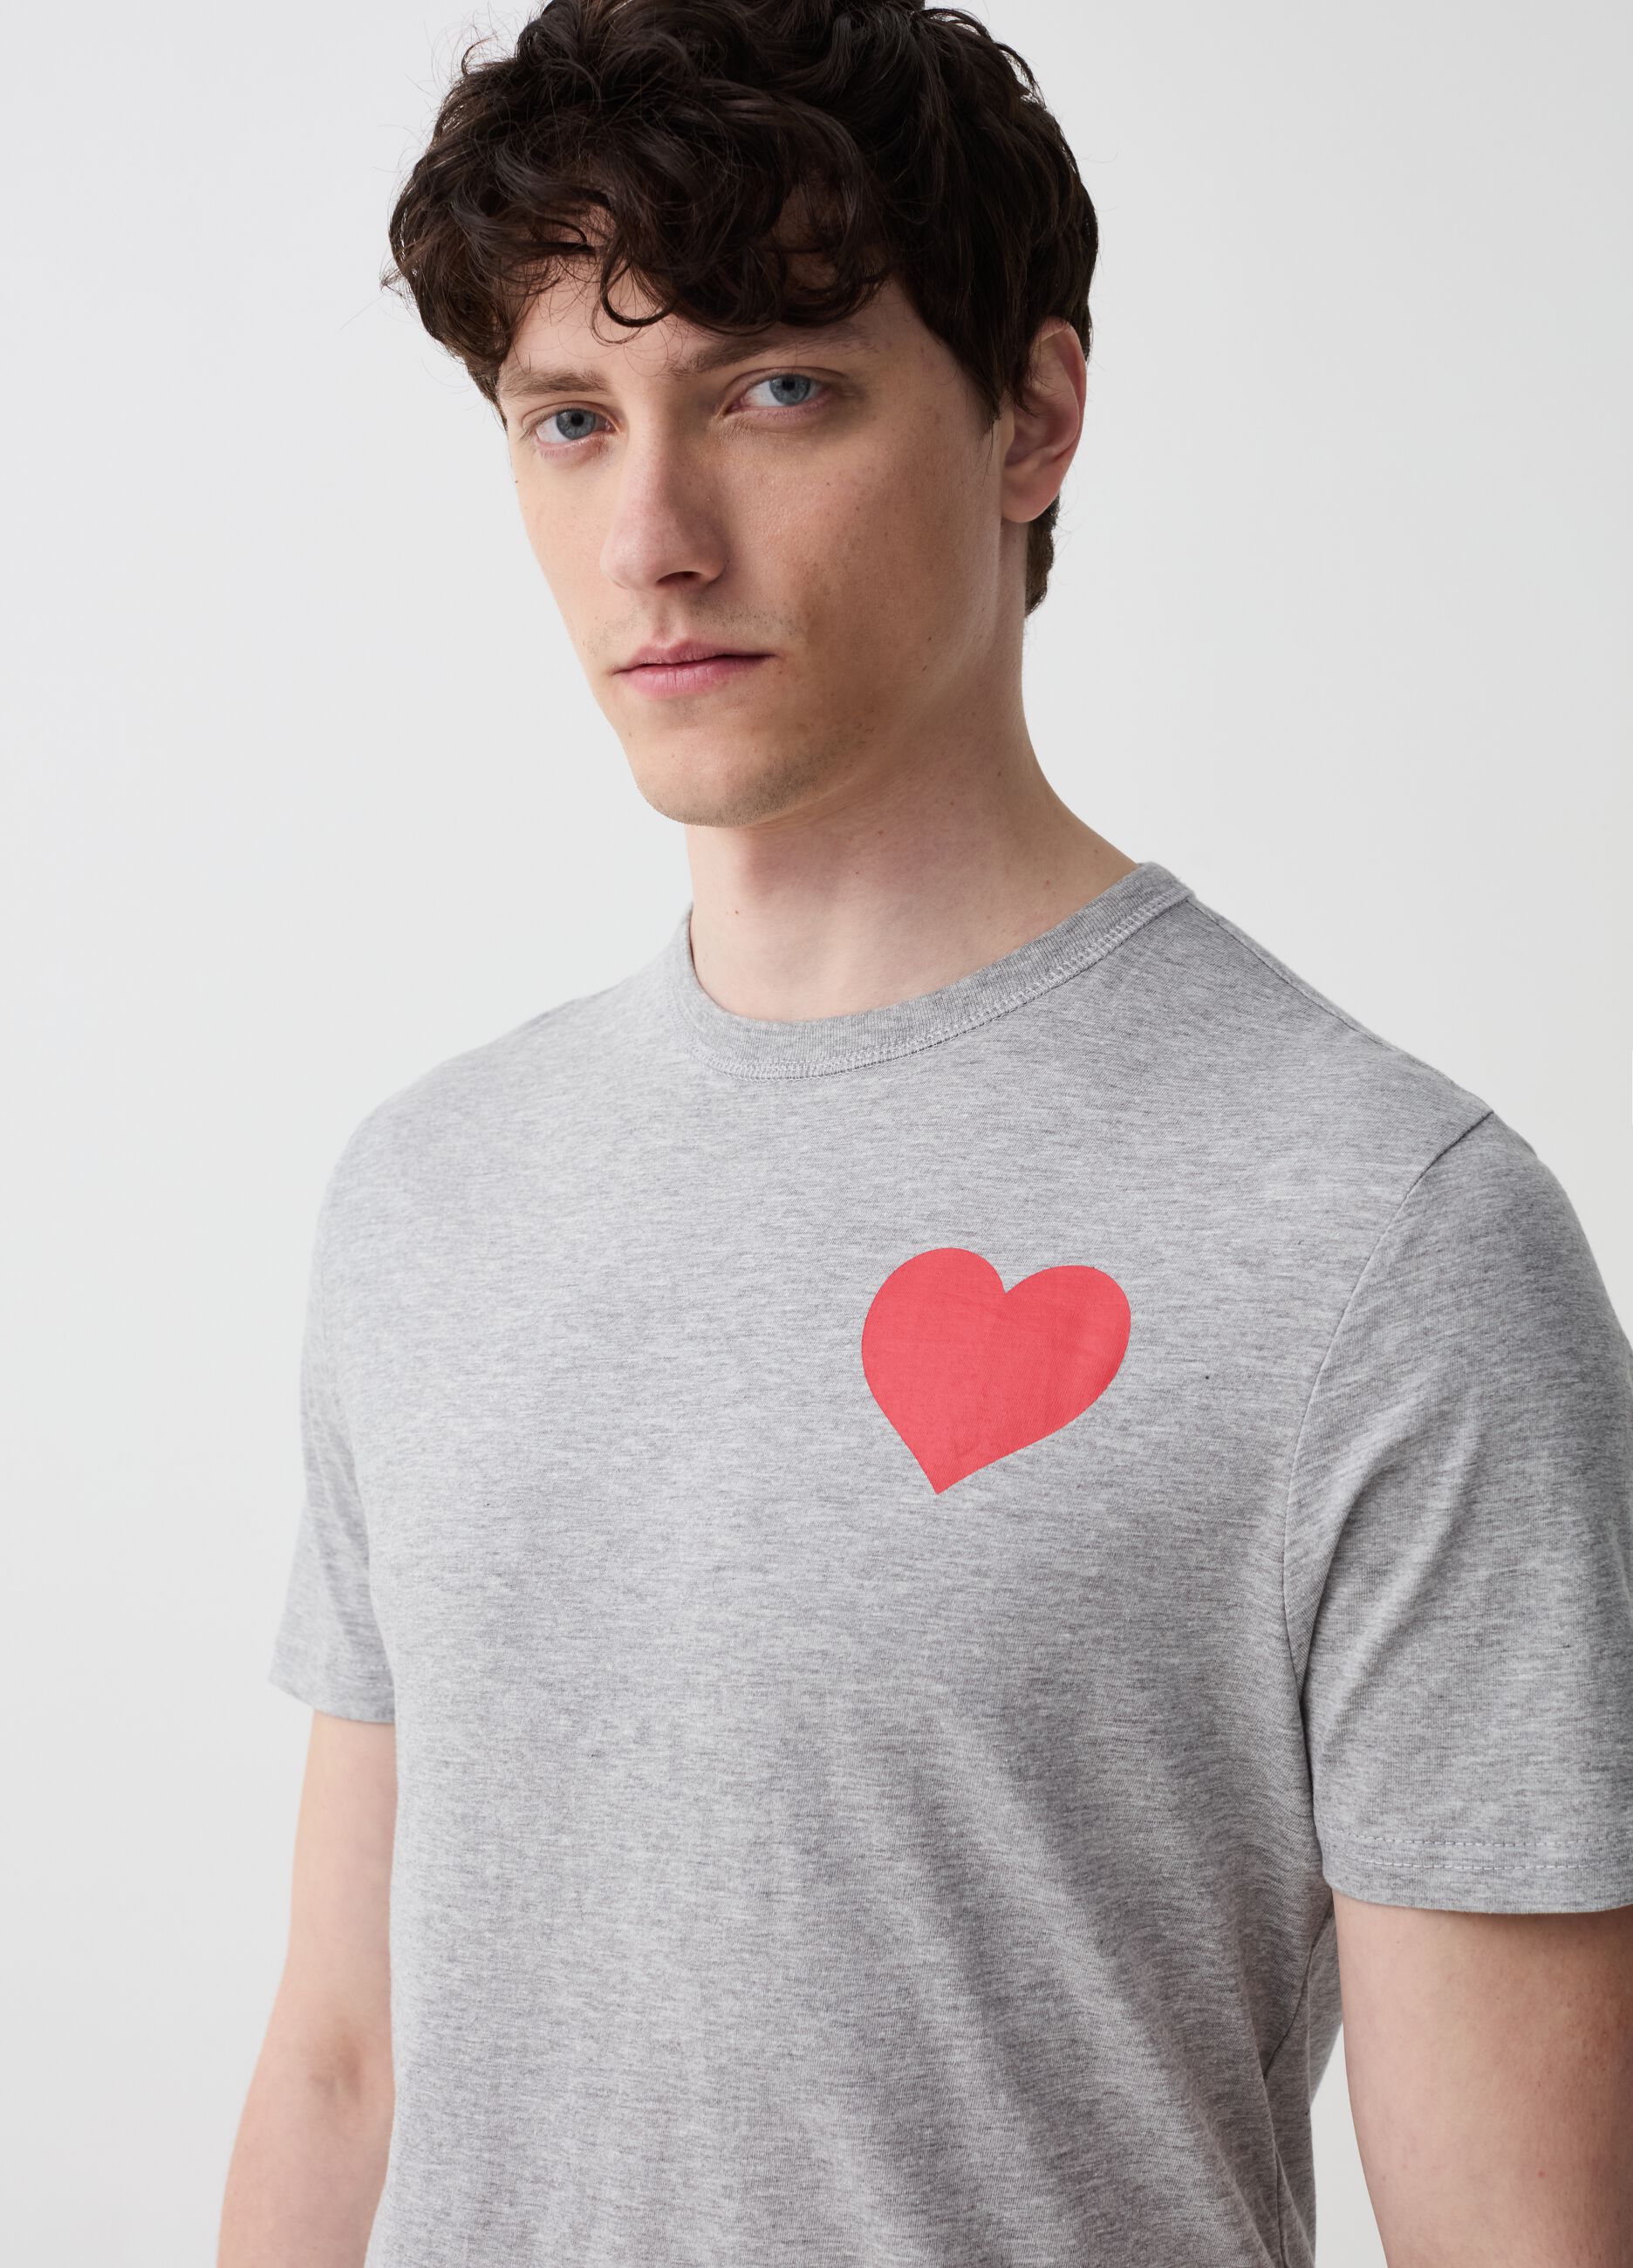 T-shirt con stampa cuore e lettering